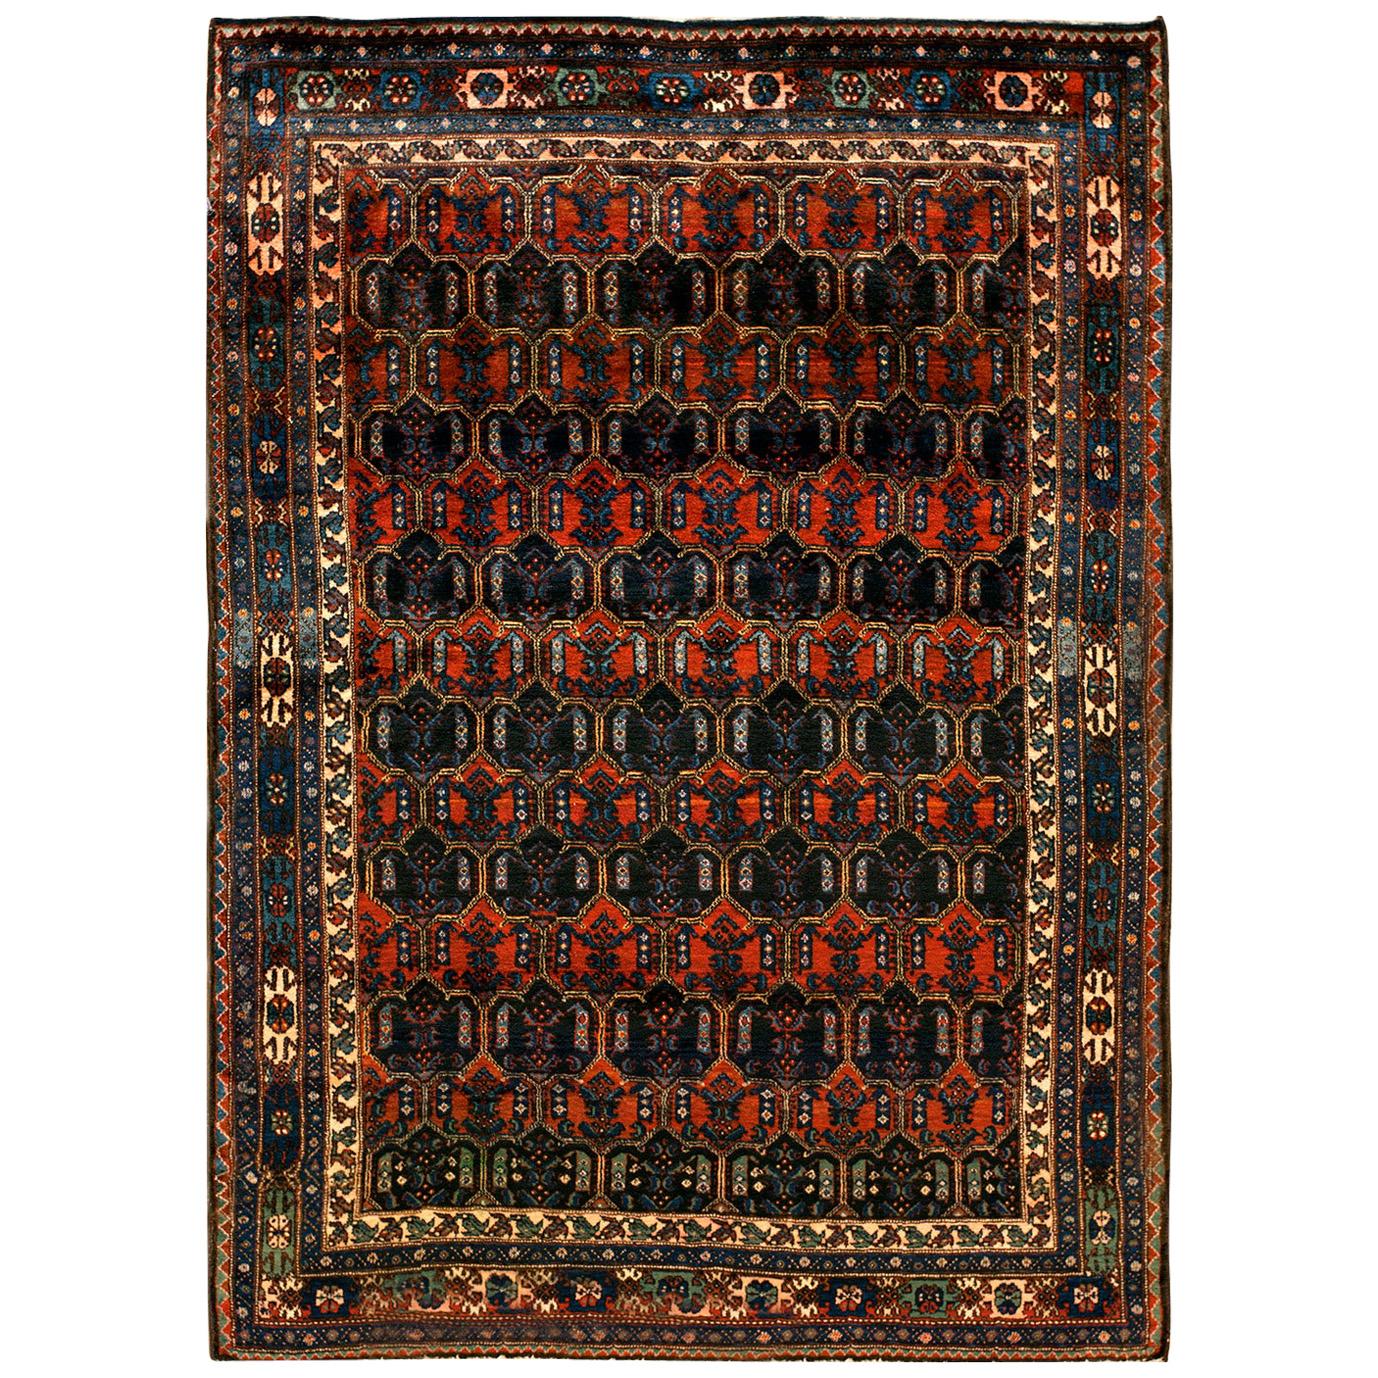 Persischer Malayer-Teppich des frühen 20. Jahrhunderts ( 4'11" x 6'10" - 150 x 208")